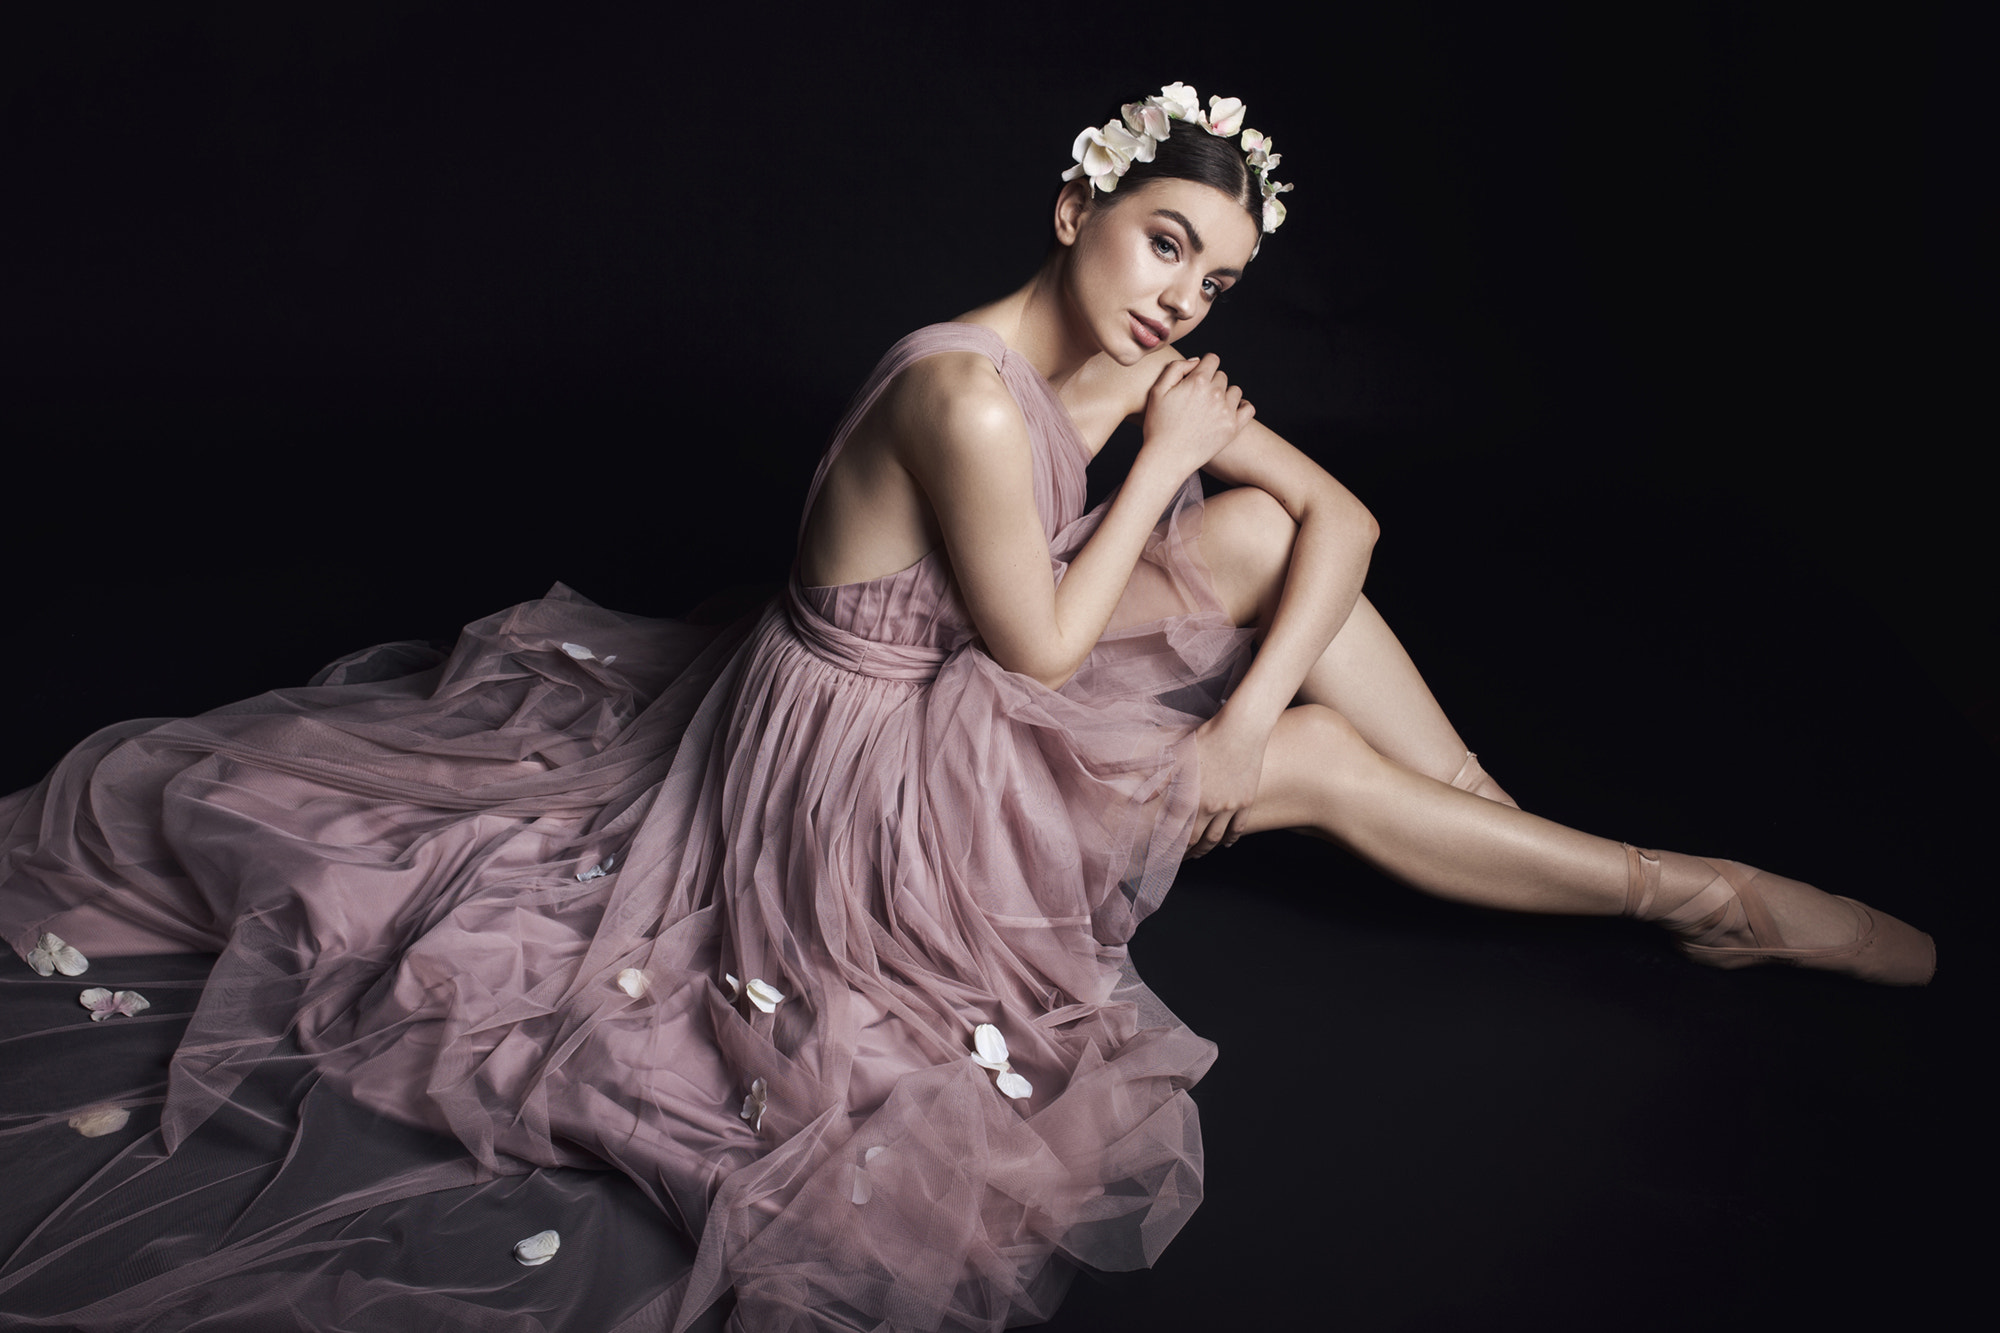 Ballerina Ballet Dress 2000x1333